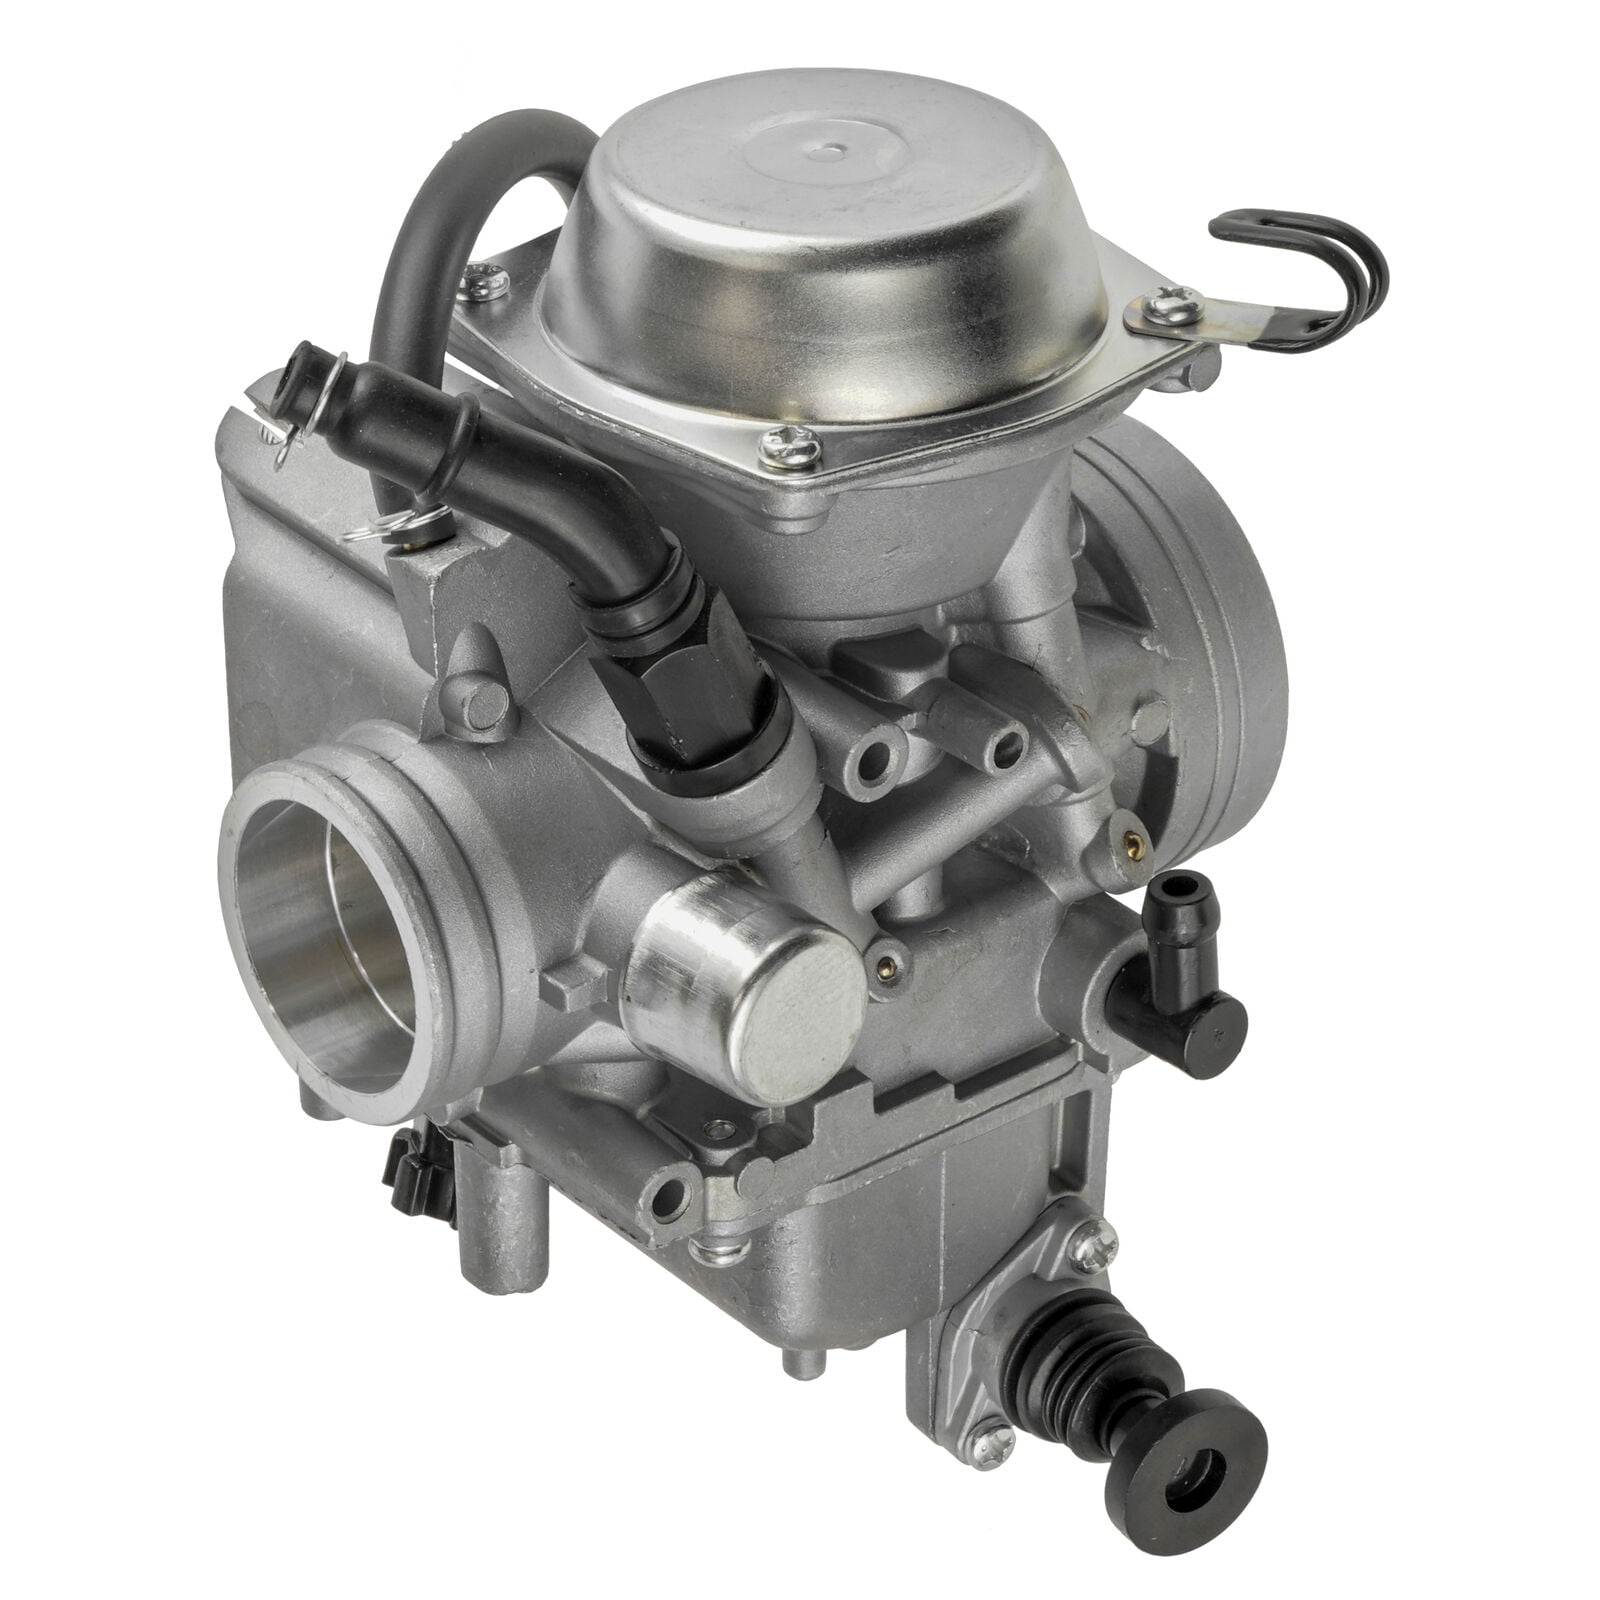 NEW Carburetor for Honda 350 Rancher TRX350FE TRX350FM 2000-2003 16100-Hn5- 673 